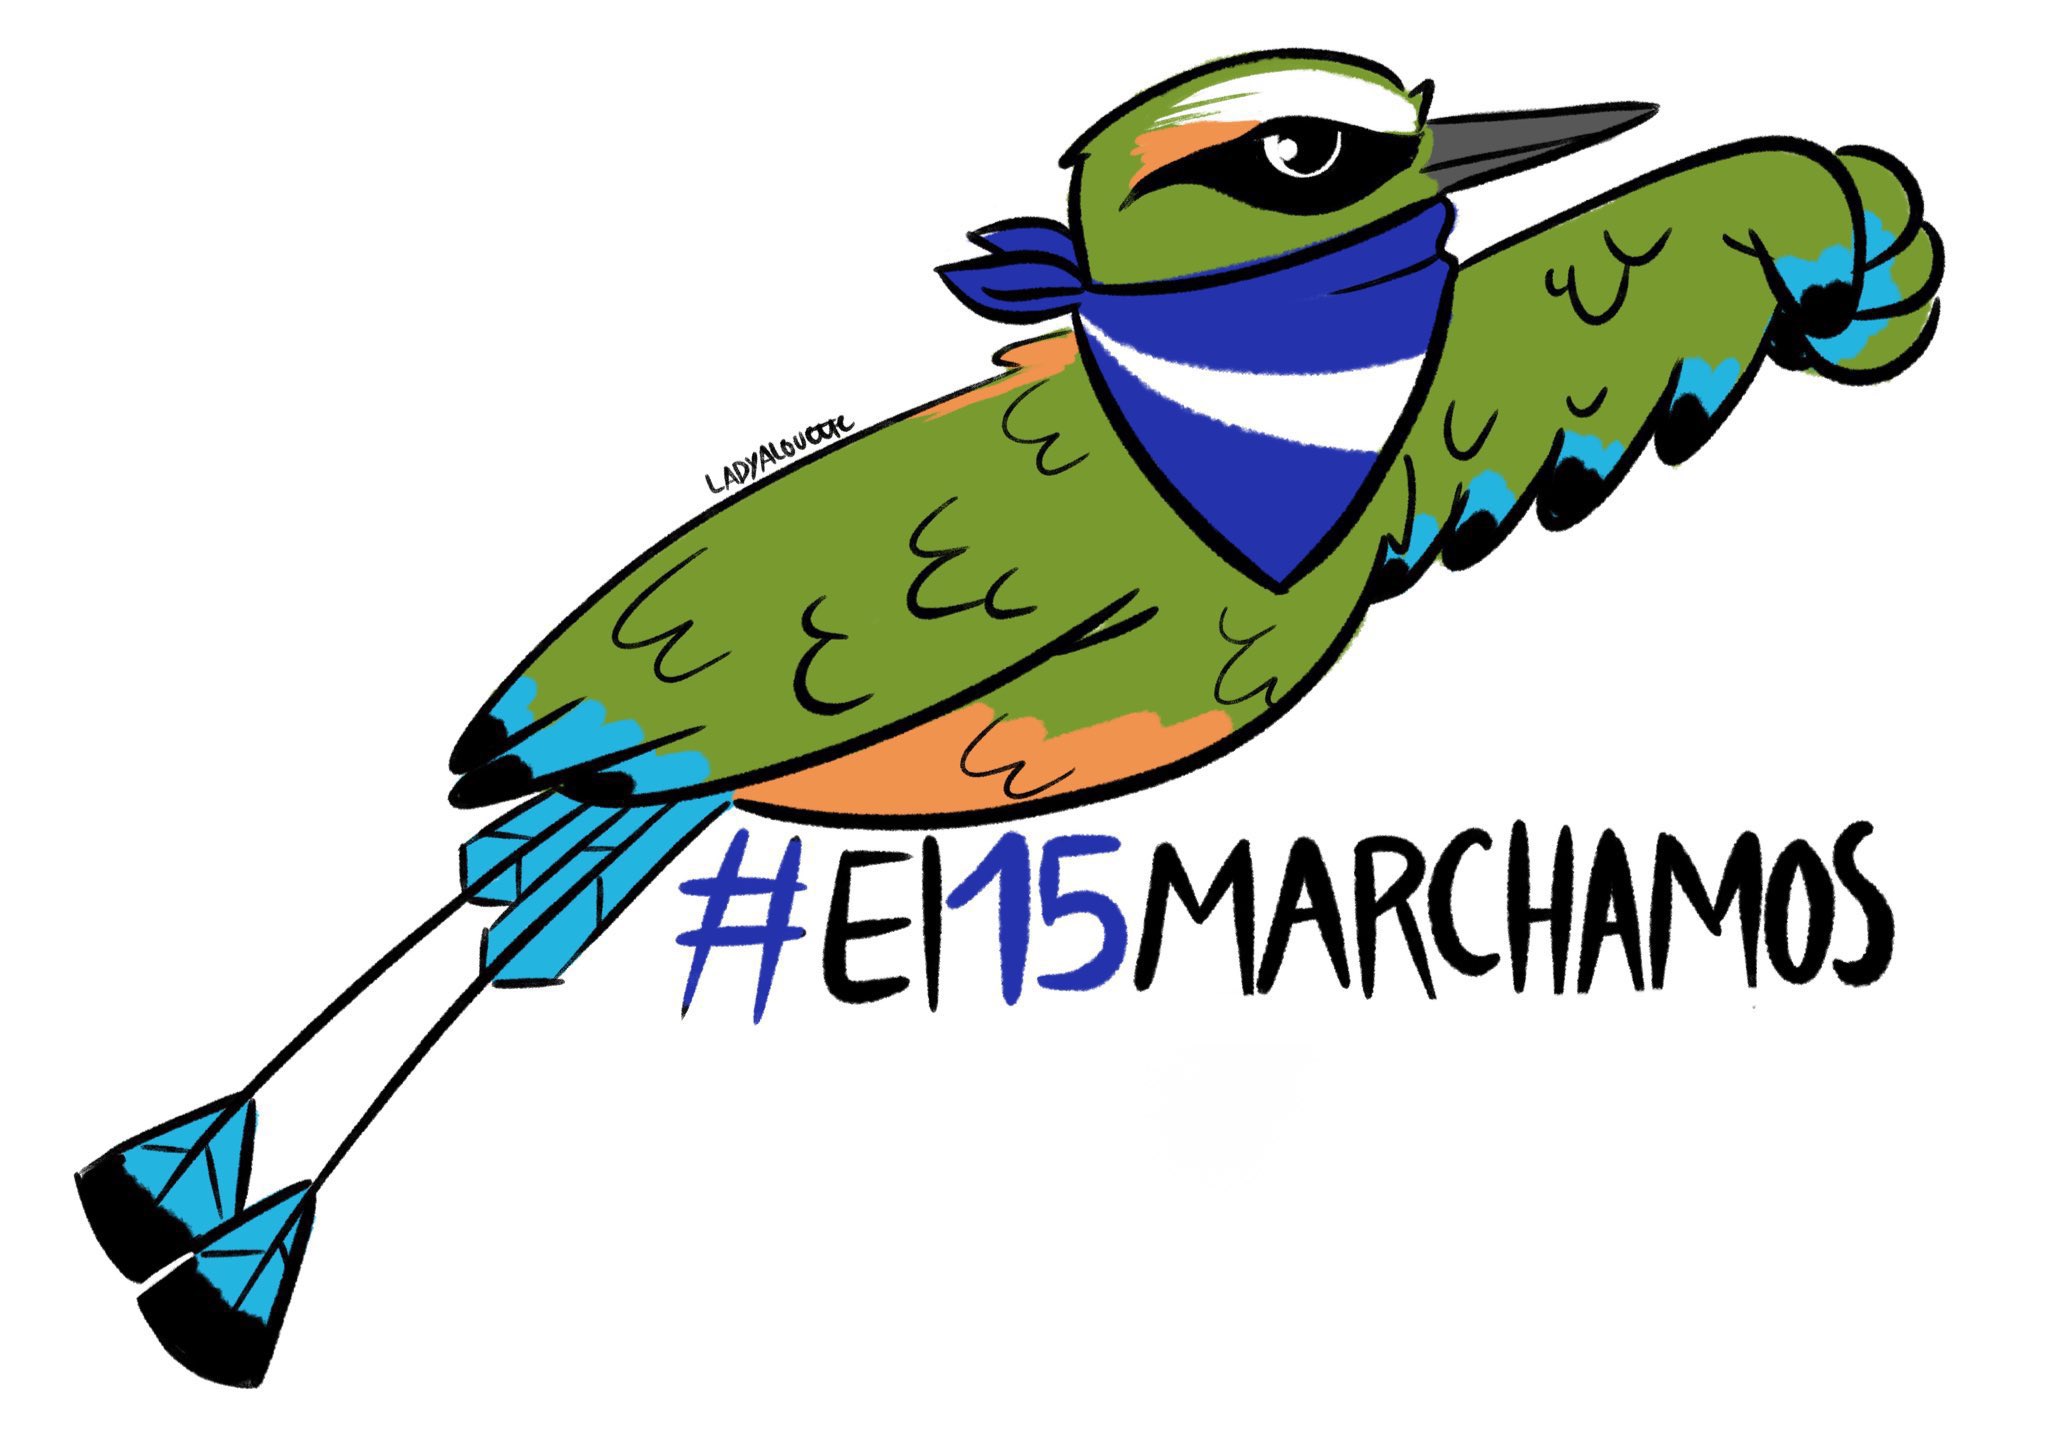 #El15Marchamos se vuelve tendencia mientras la sociedad civil se une para protestar contra régimen de Bukele